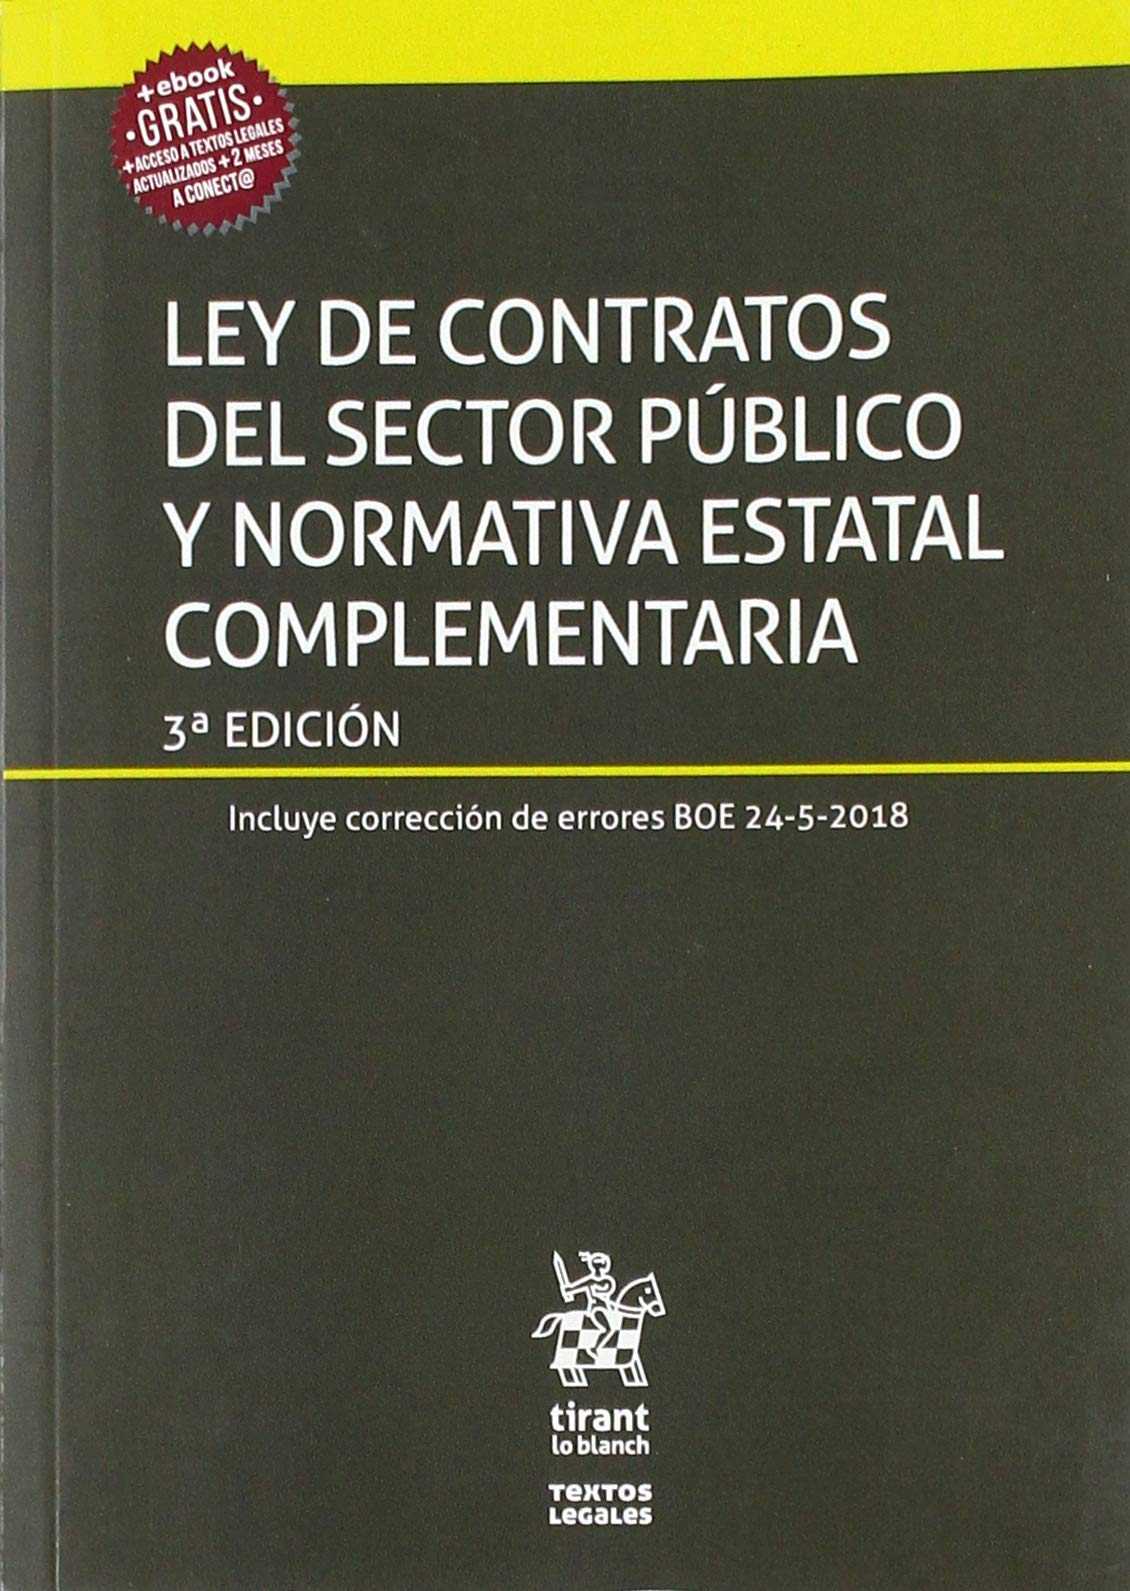 LEY DE CONTRATOS DEL SECTOR PUBLICO Y NORMATIVA ESTATAL COMPLEMENTARIA